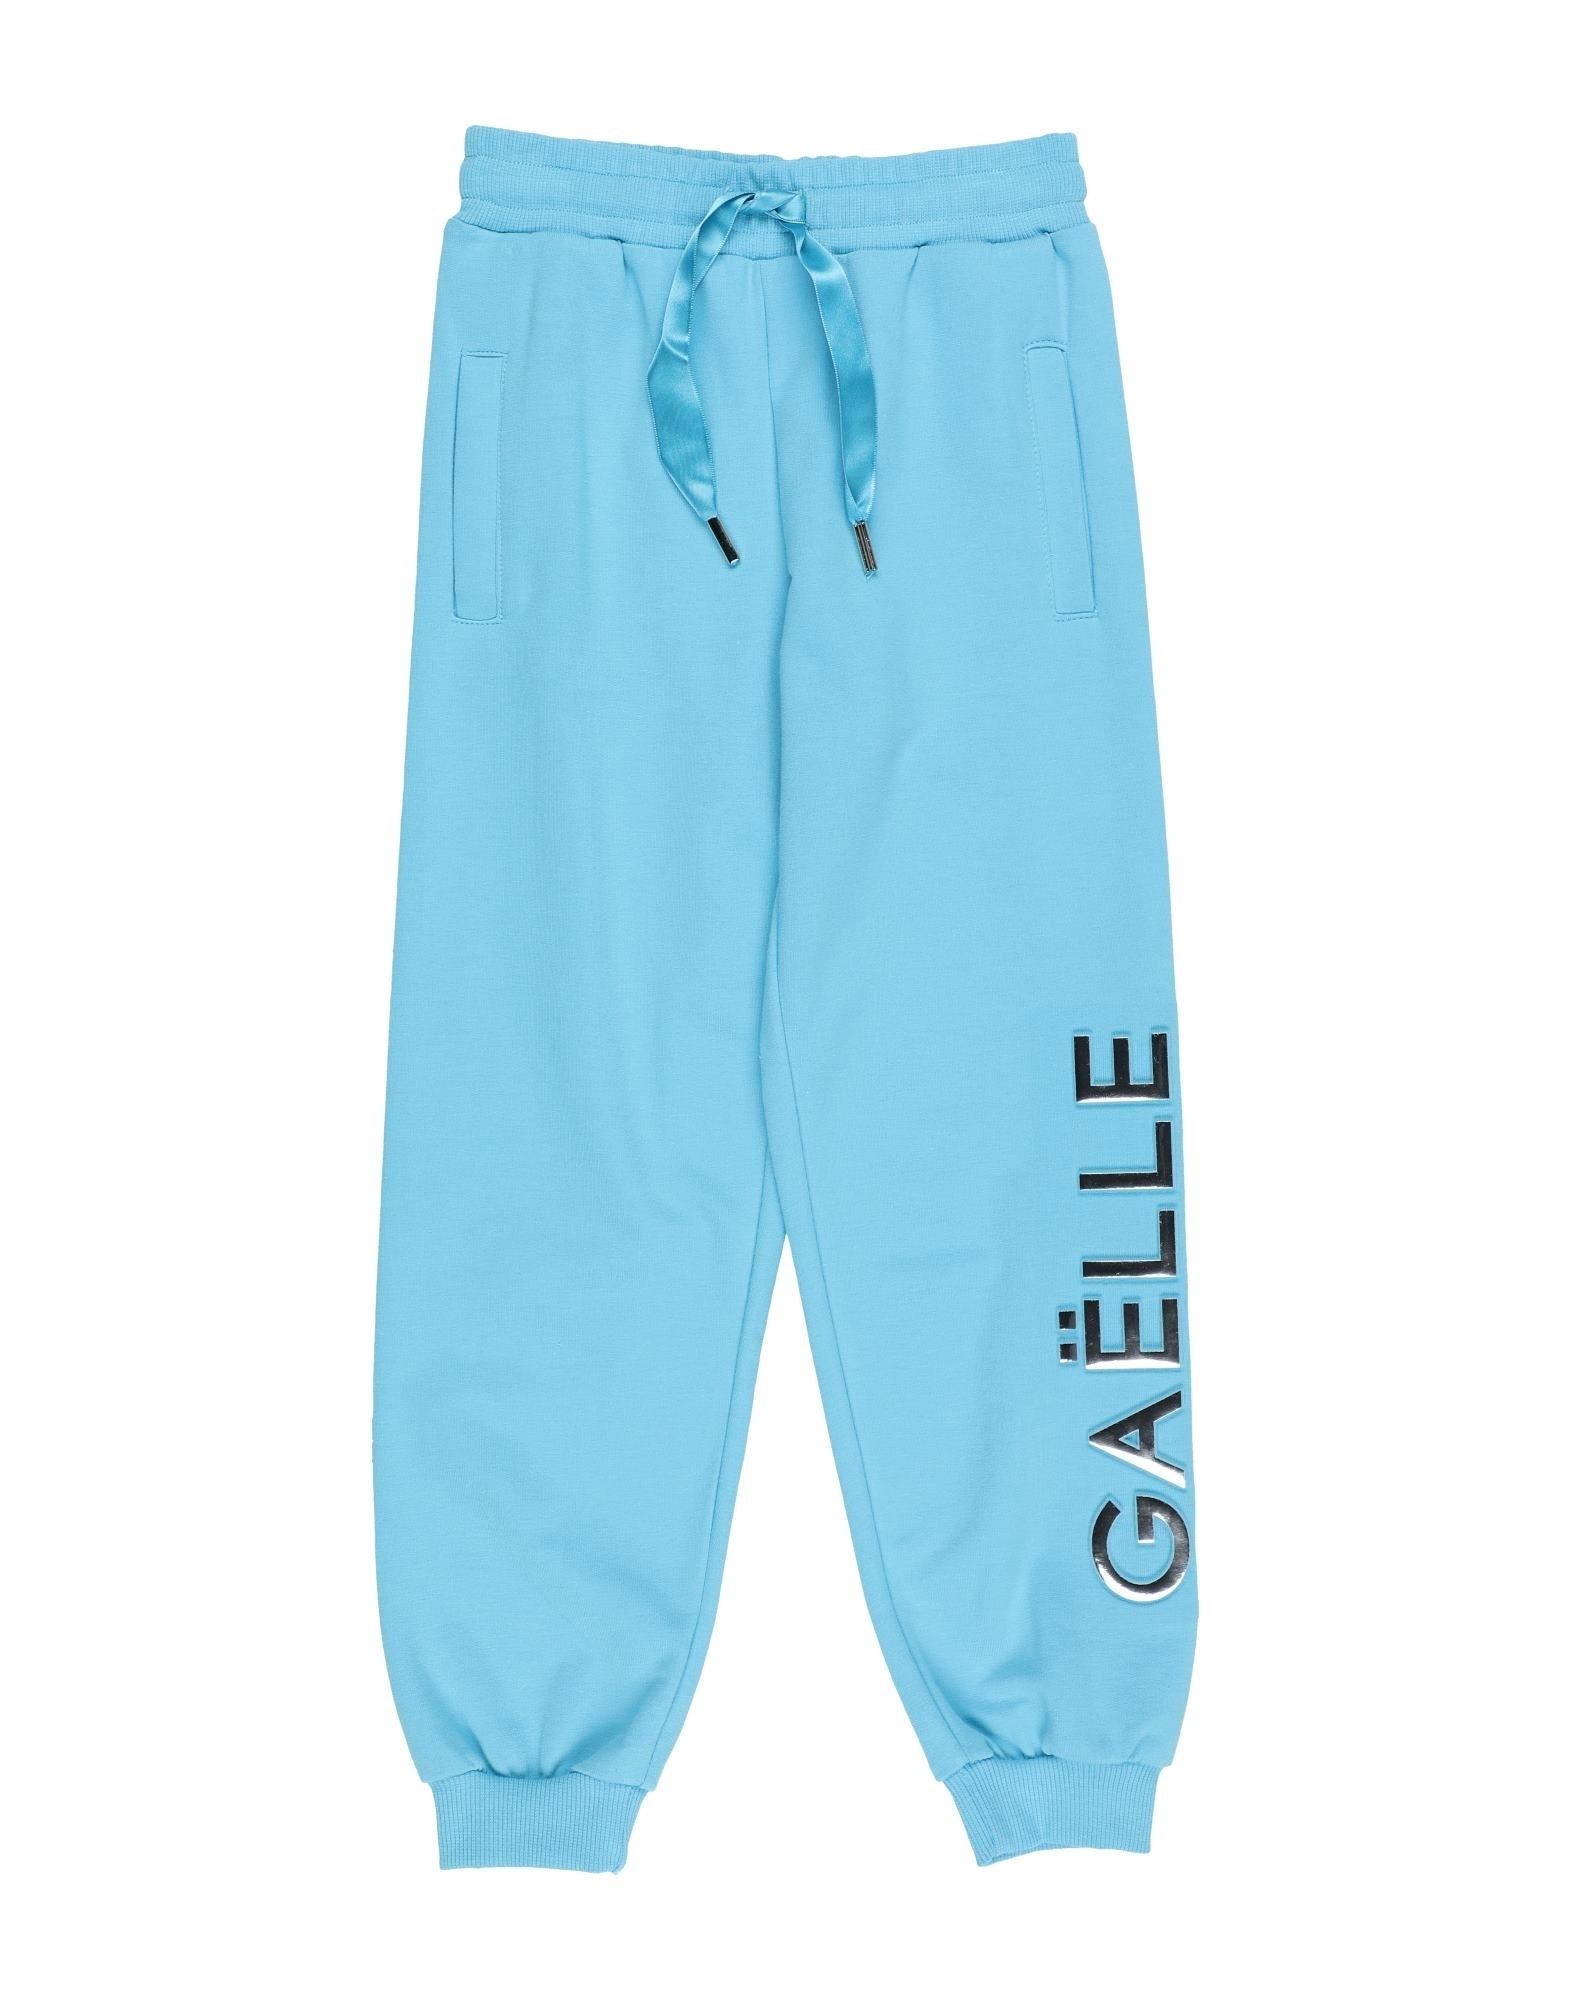 Gaelle Paris Kids' Pants In Blue